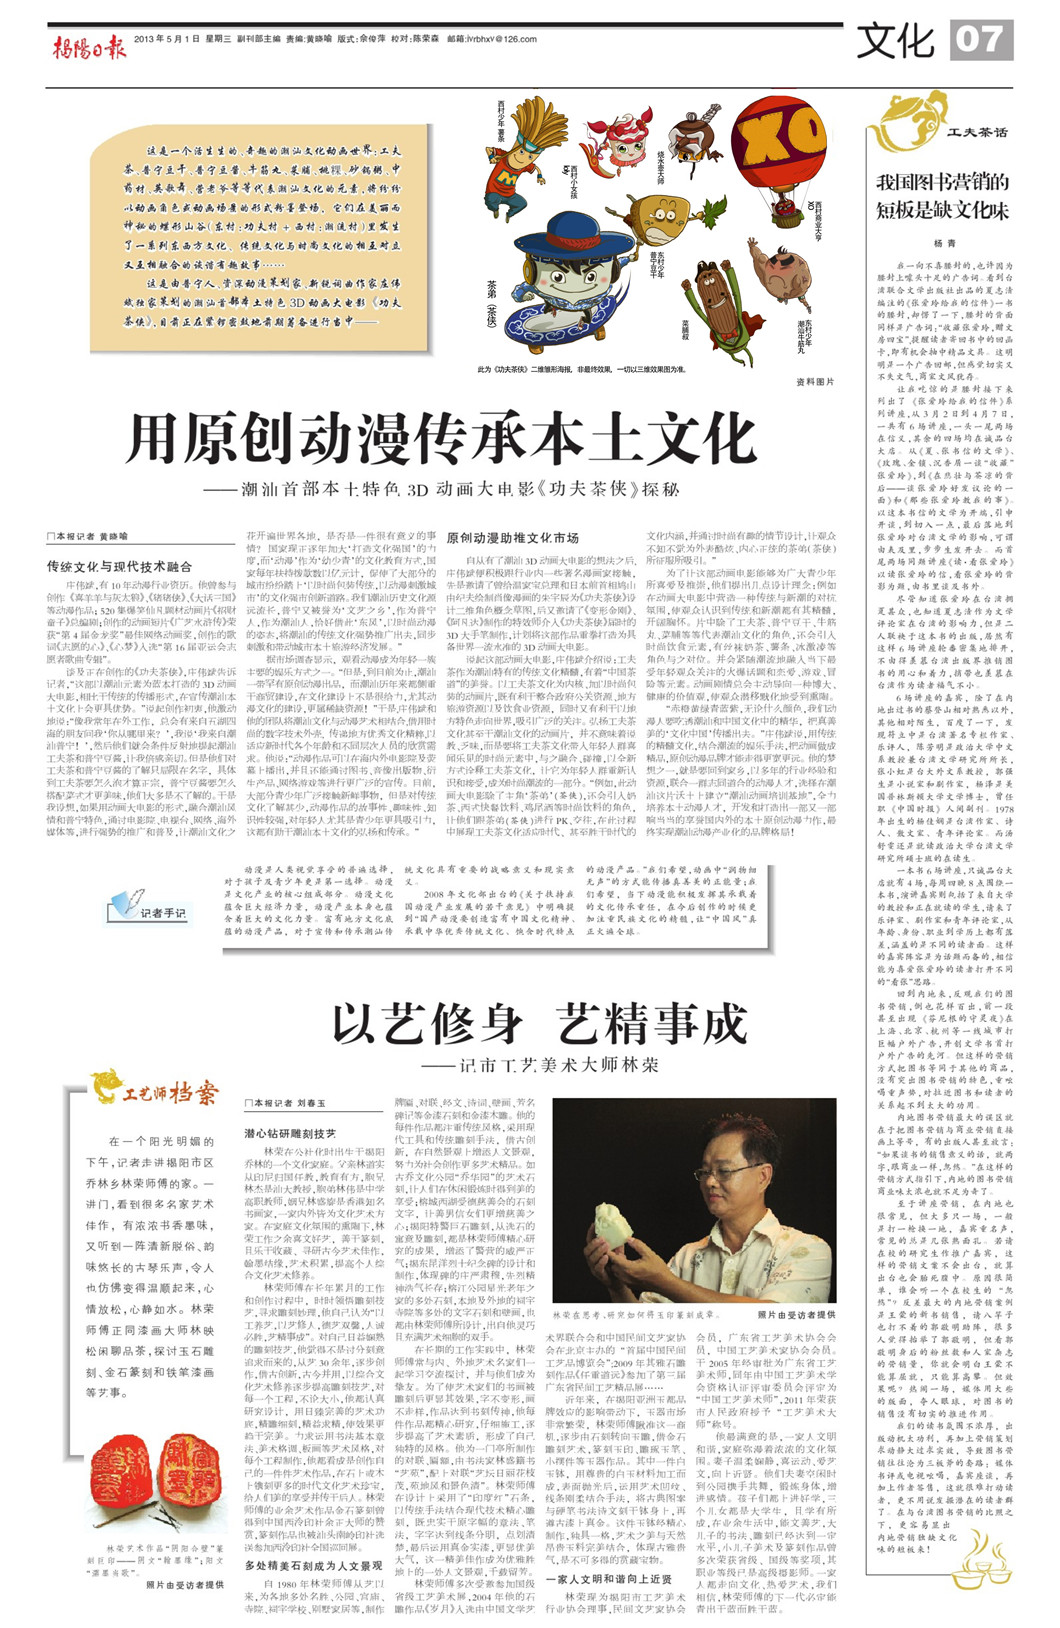 《揭陽日報》（2013年5月1日·文化版）報導